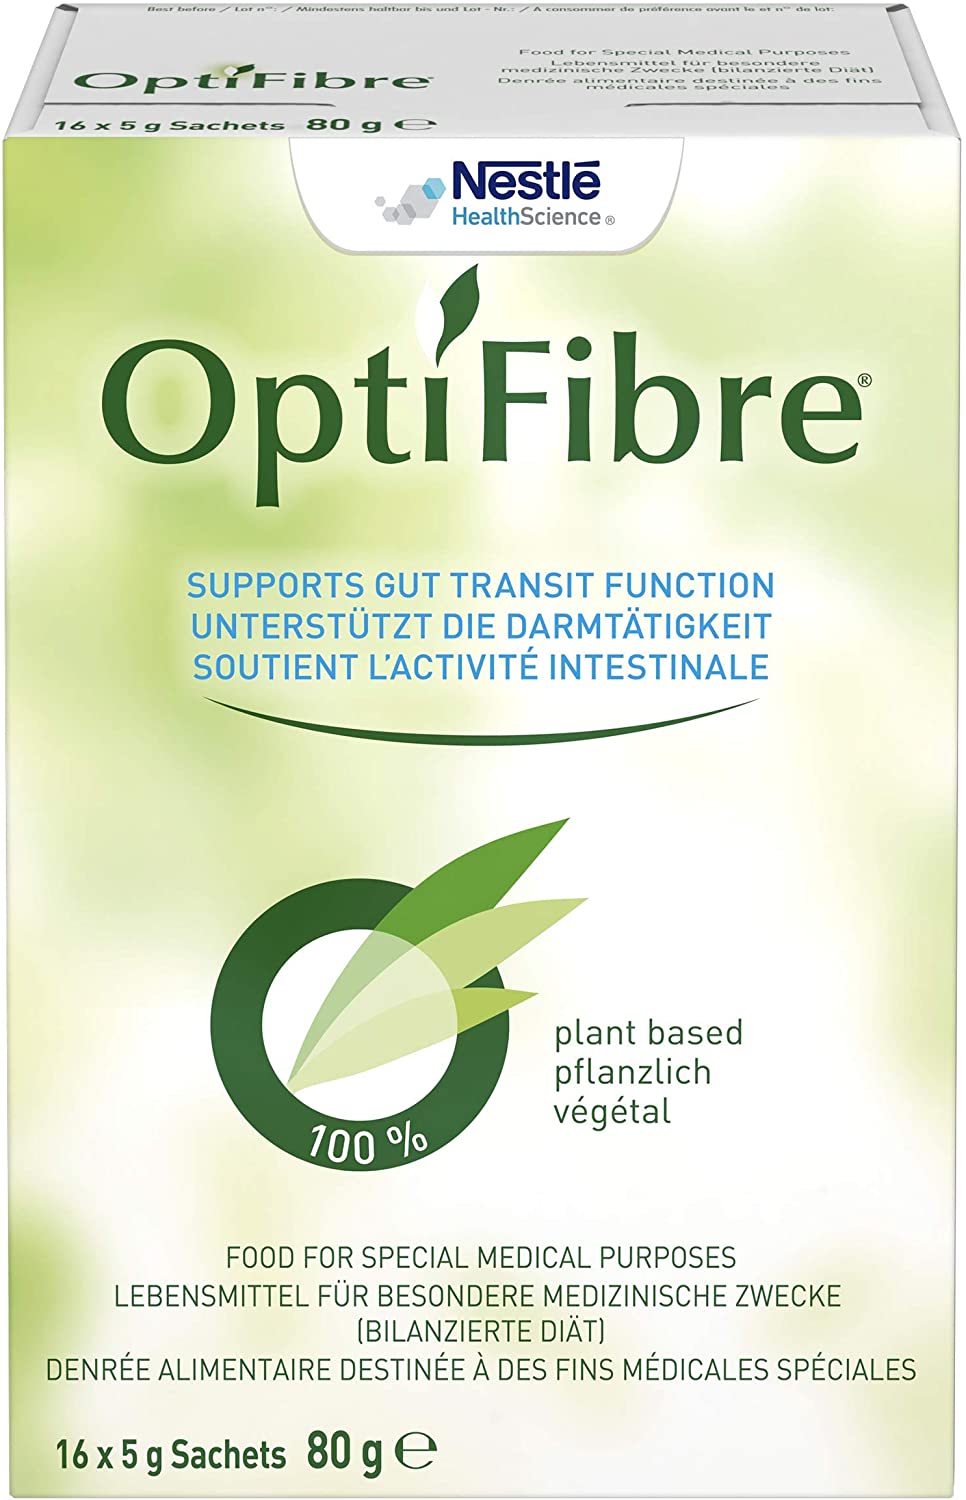 Nestle Optifibre soluble fiber 250 g